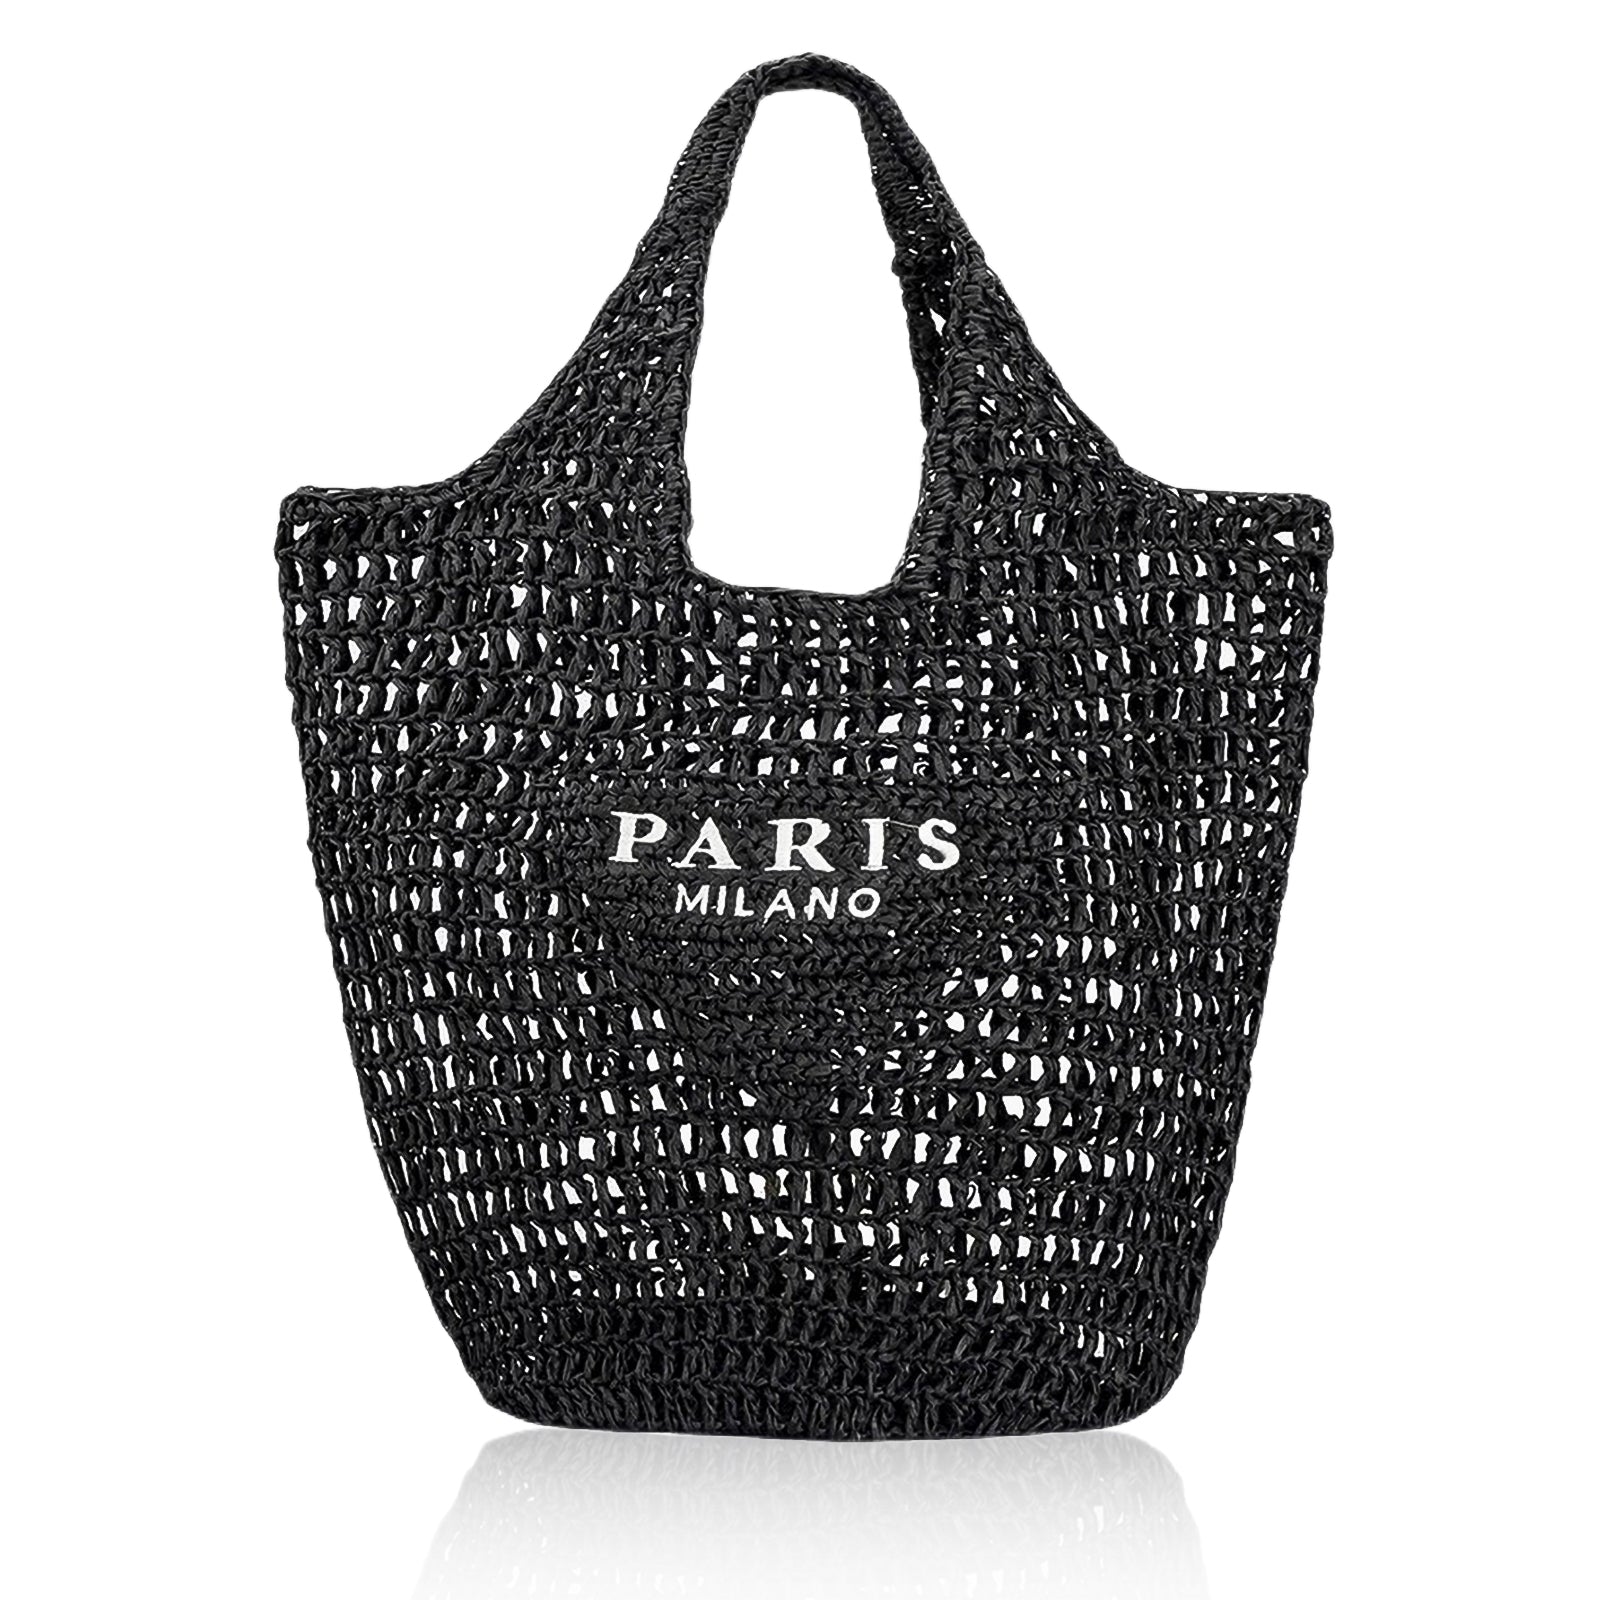 Straw Tote Bag for women,Mesh Hollow Woven Tote Bag,Handbag Beach Bag,Paris Hobo Bag,Large Shoulder Travel Tote Bag